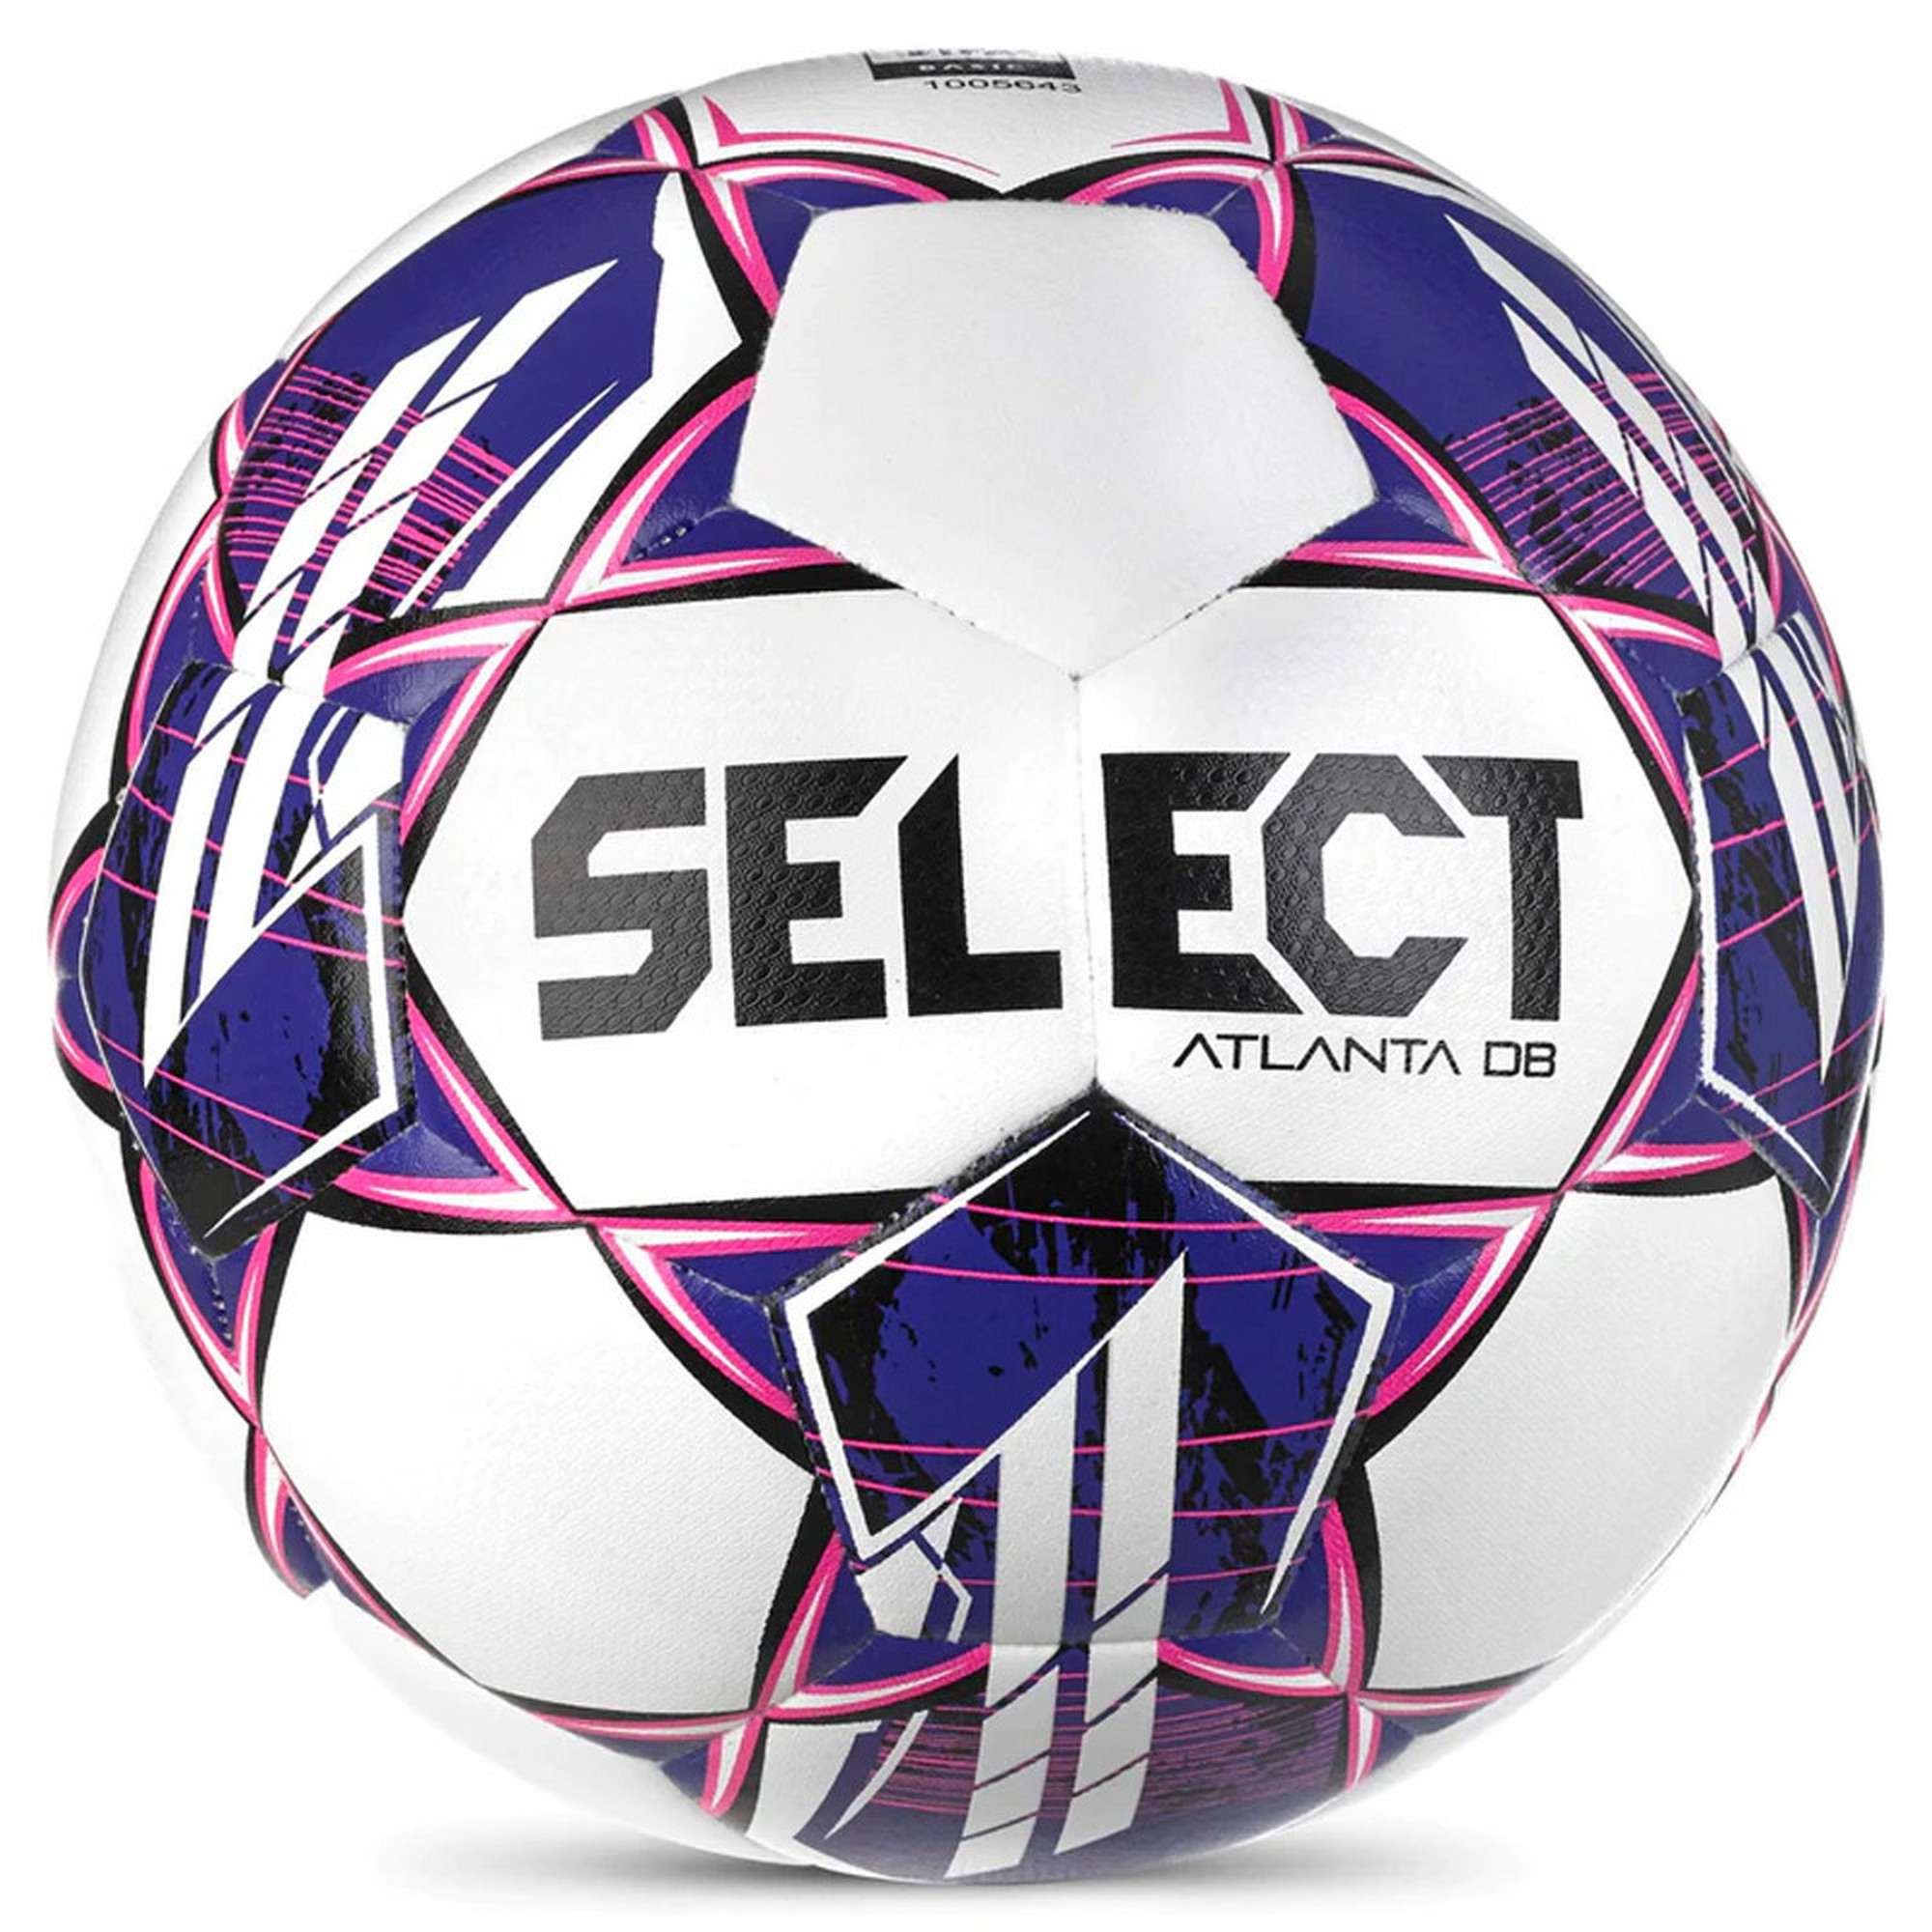 Мяч футбольный Select Atlanta DB 0575960900 р.5, FIFA Basic,  - купить со скидкой